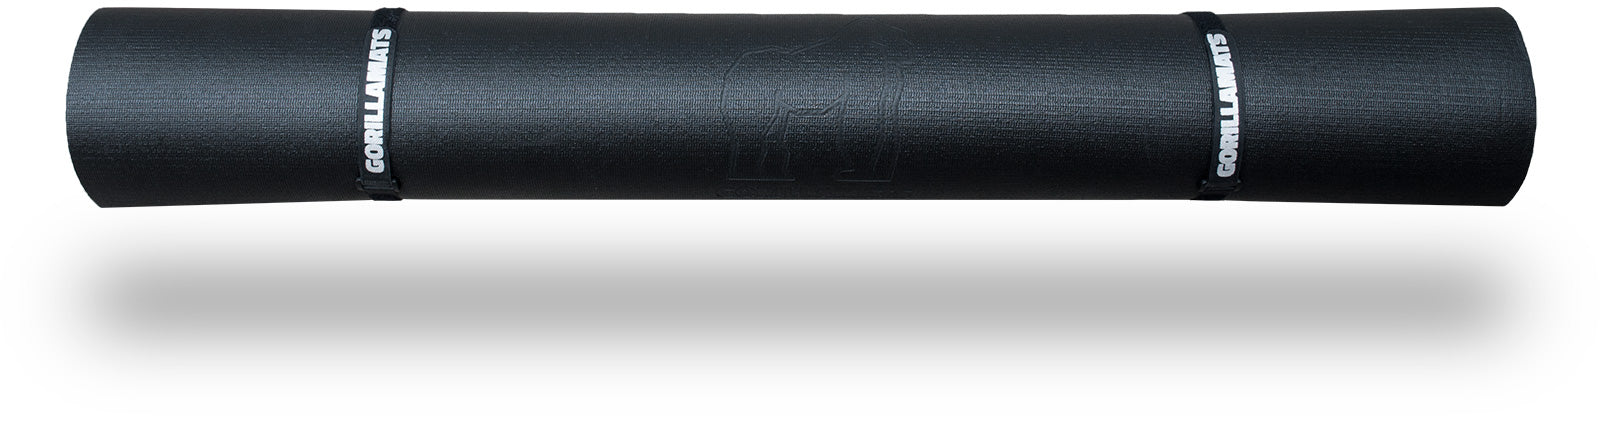 Gorilla Mats Premium Large Exercise Mat – 7' x 5' x 6mm Ultra